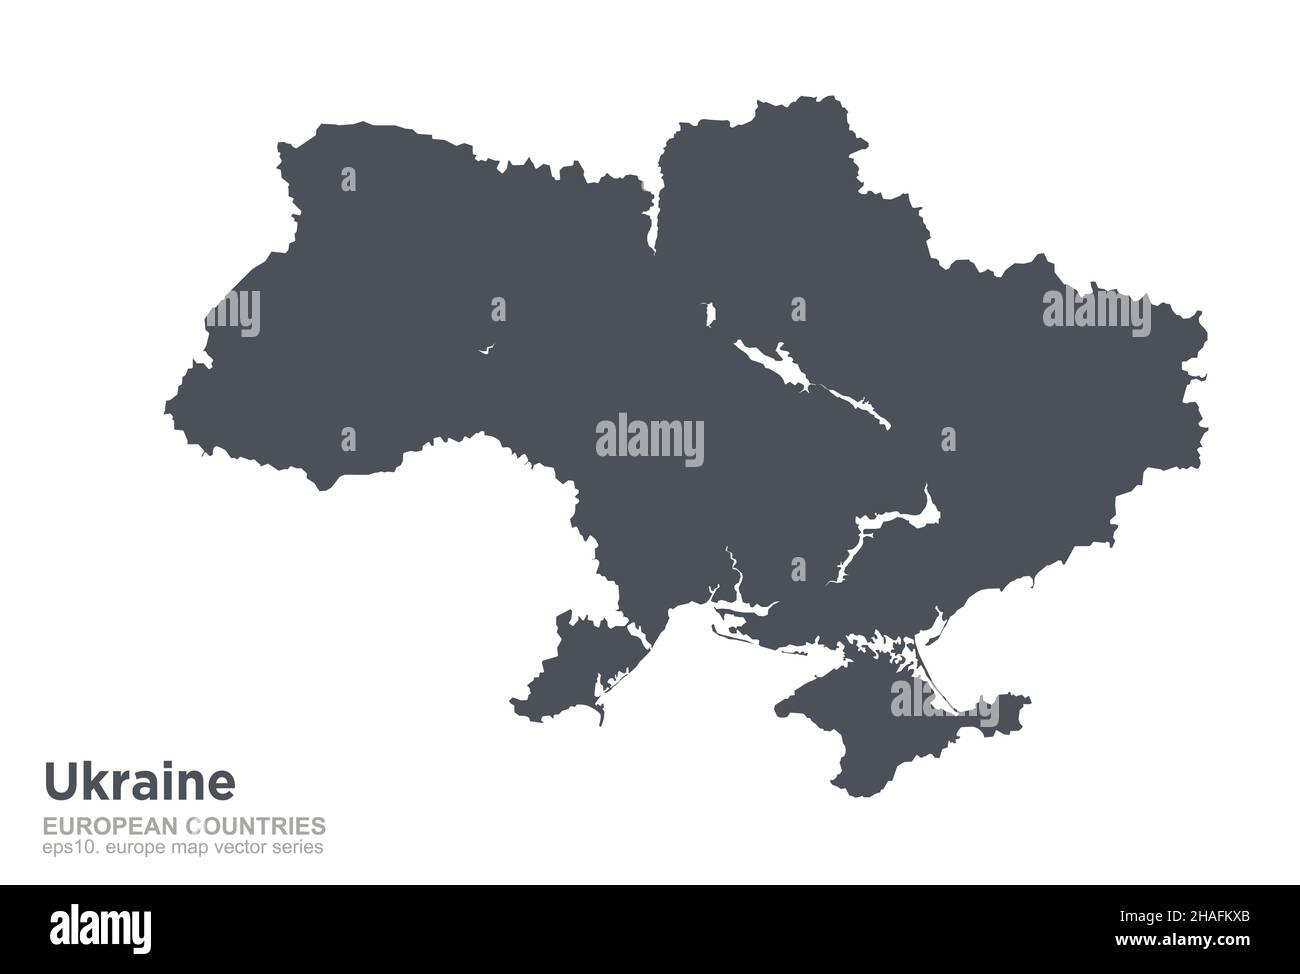 Ucraina. Mappa Ucraina. Mappa vettoriale dei paesi europei. Illustrazione Vettoriale